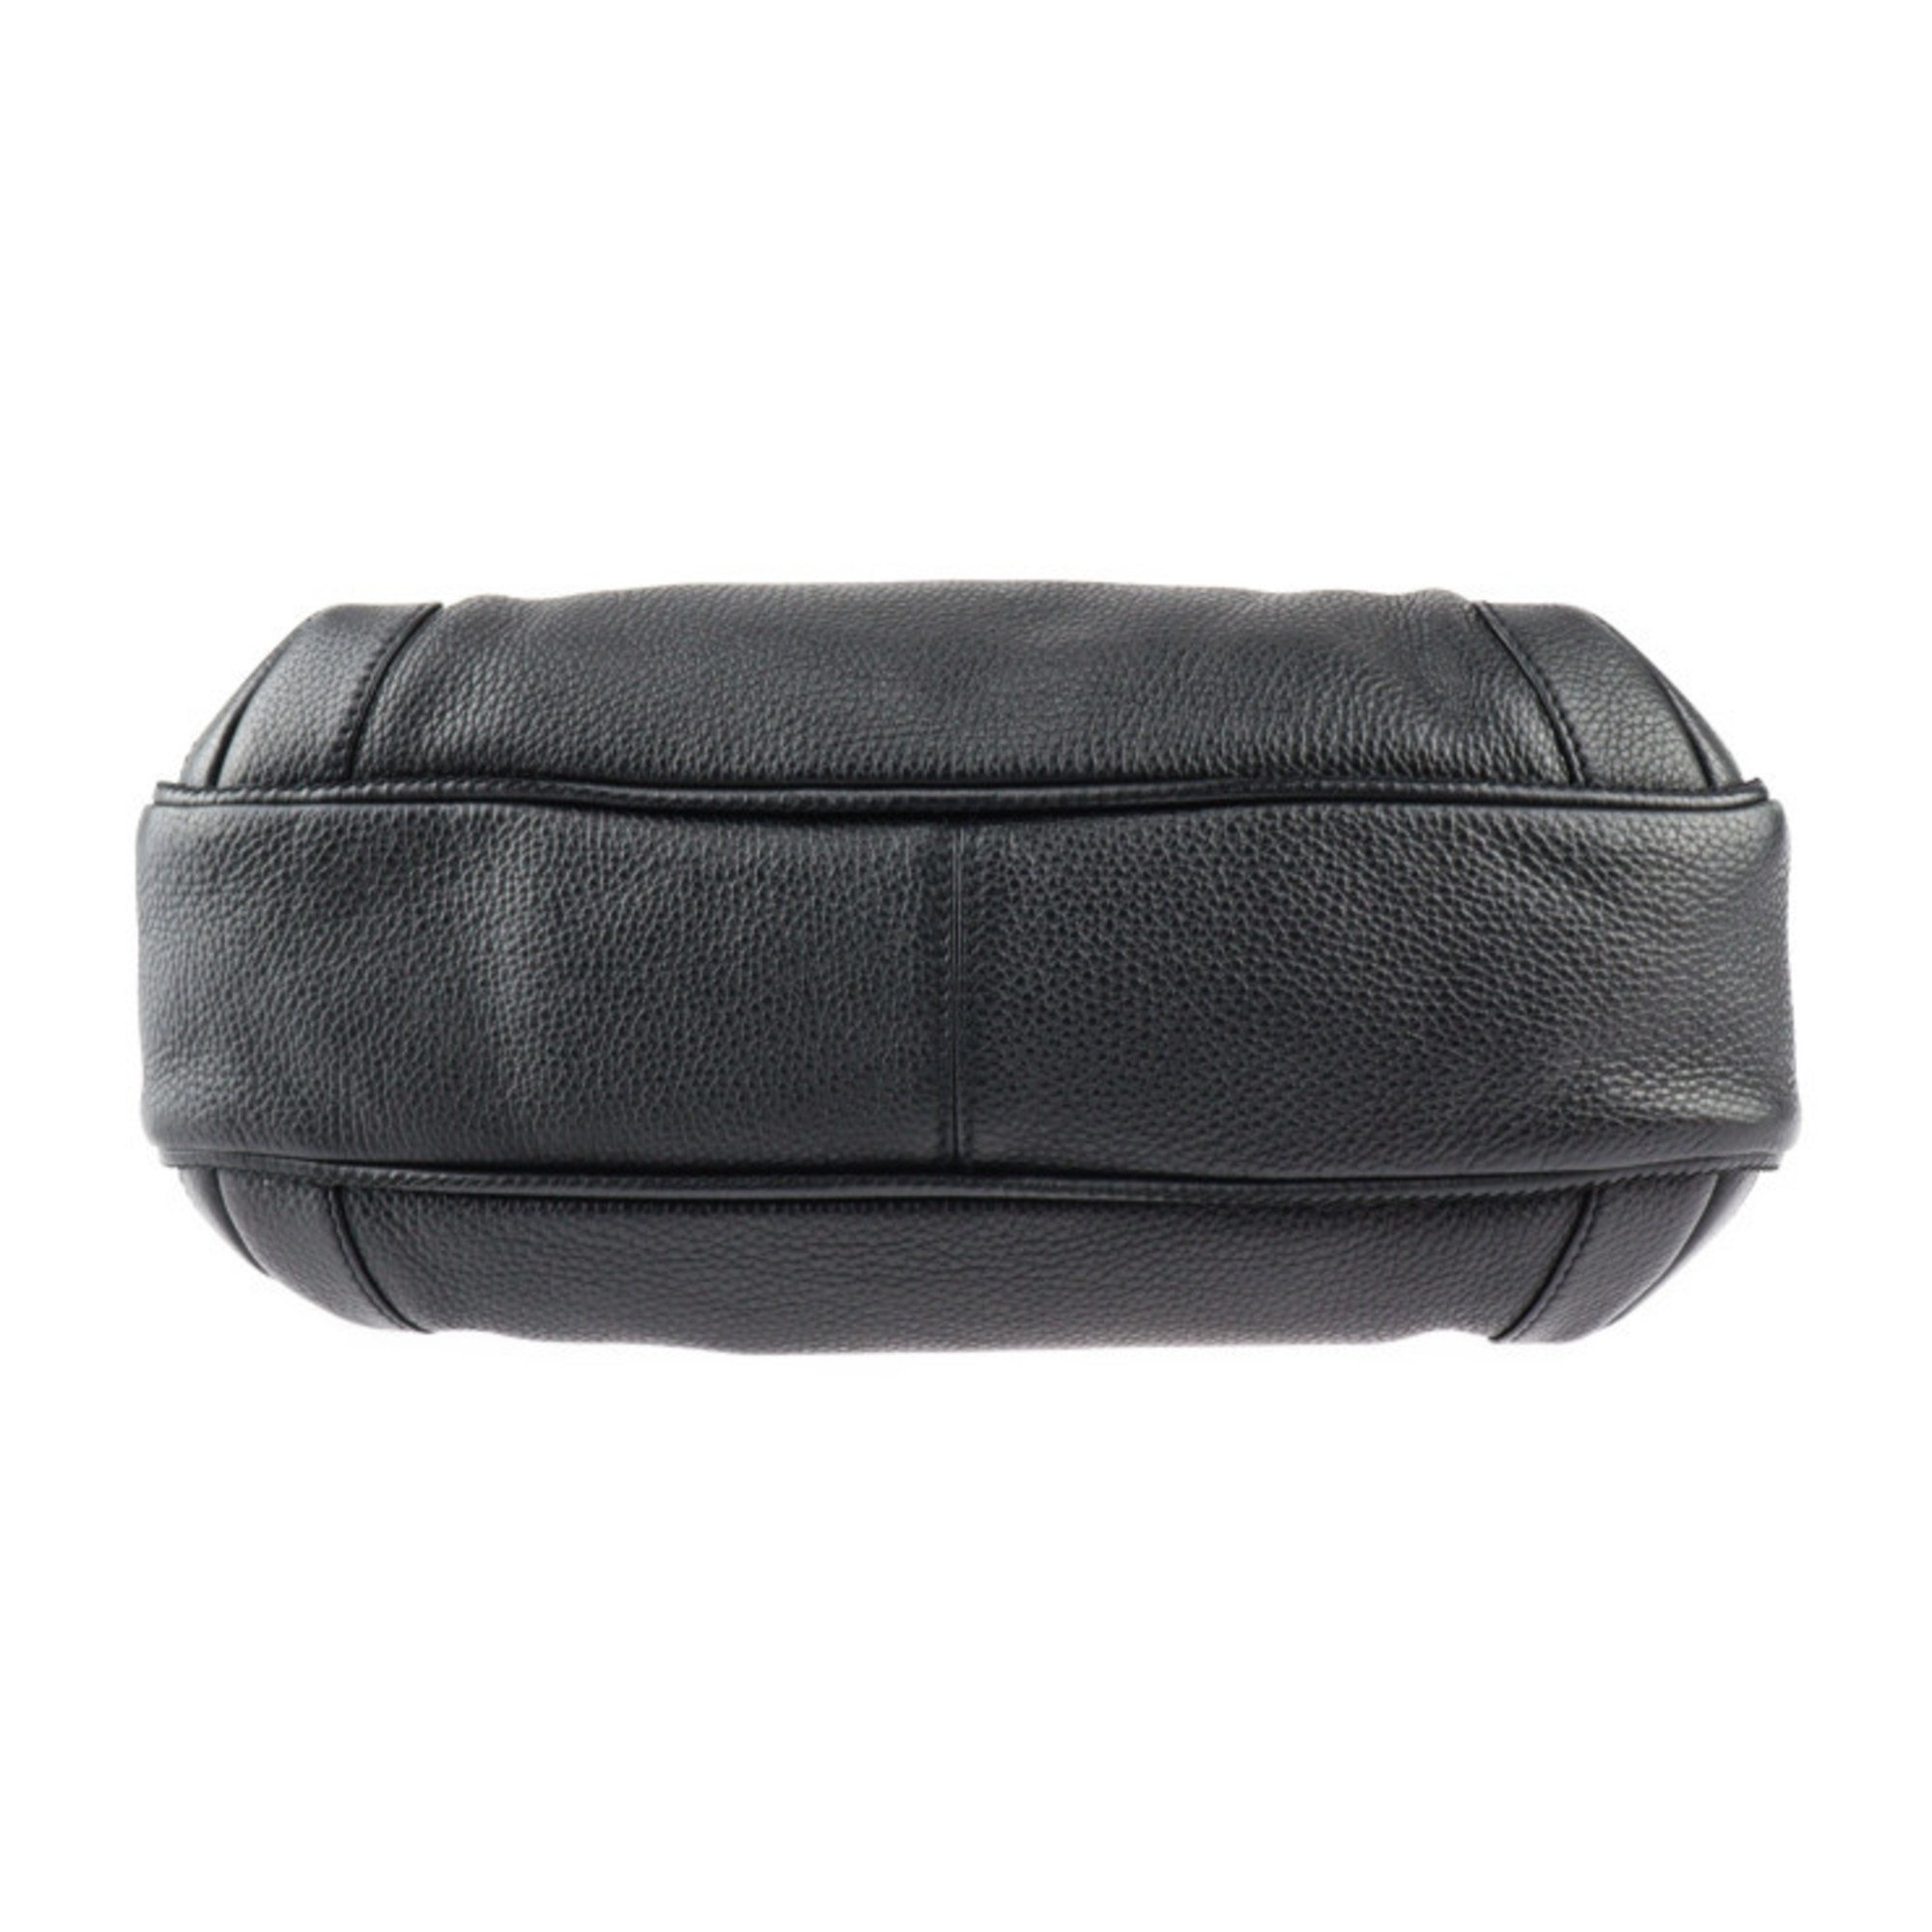 CHANEL Handbag Leather Black Silver Hardware Shoulder Tote Bag Side Zipper Cube Tassel Fringe Coco Mark Logo